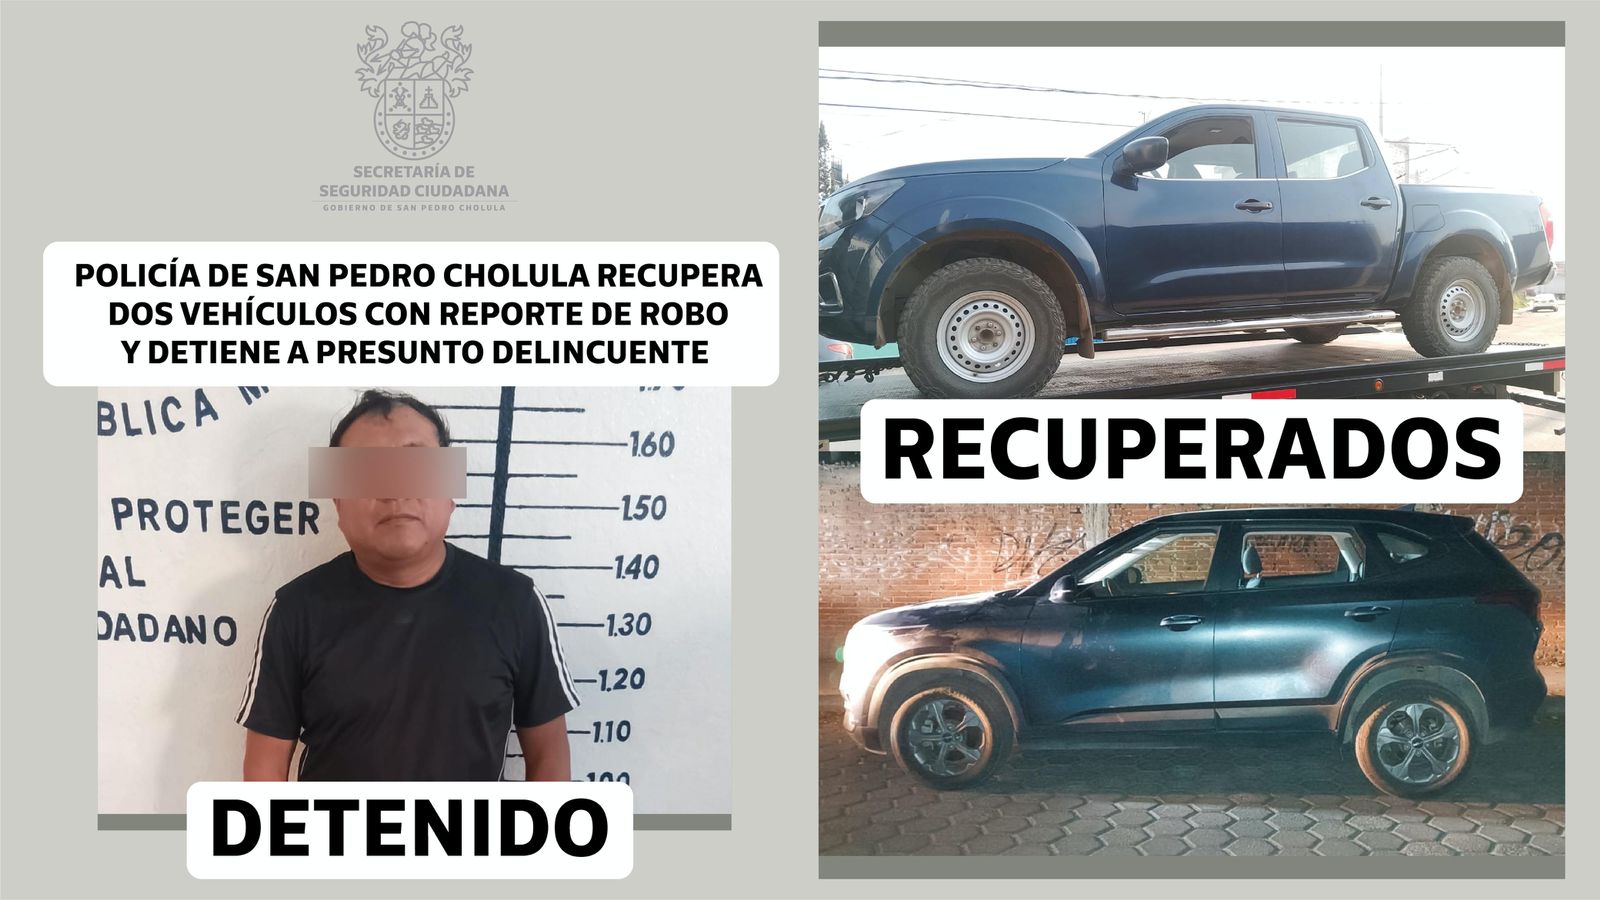 En San Pedro Cholula detienen a un presunto delincuente y recuperan 2 vehículos robados robados